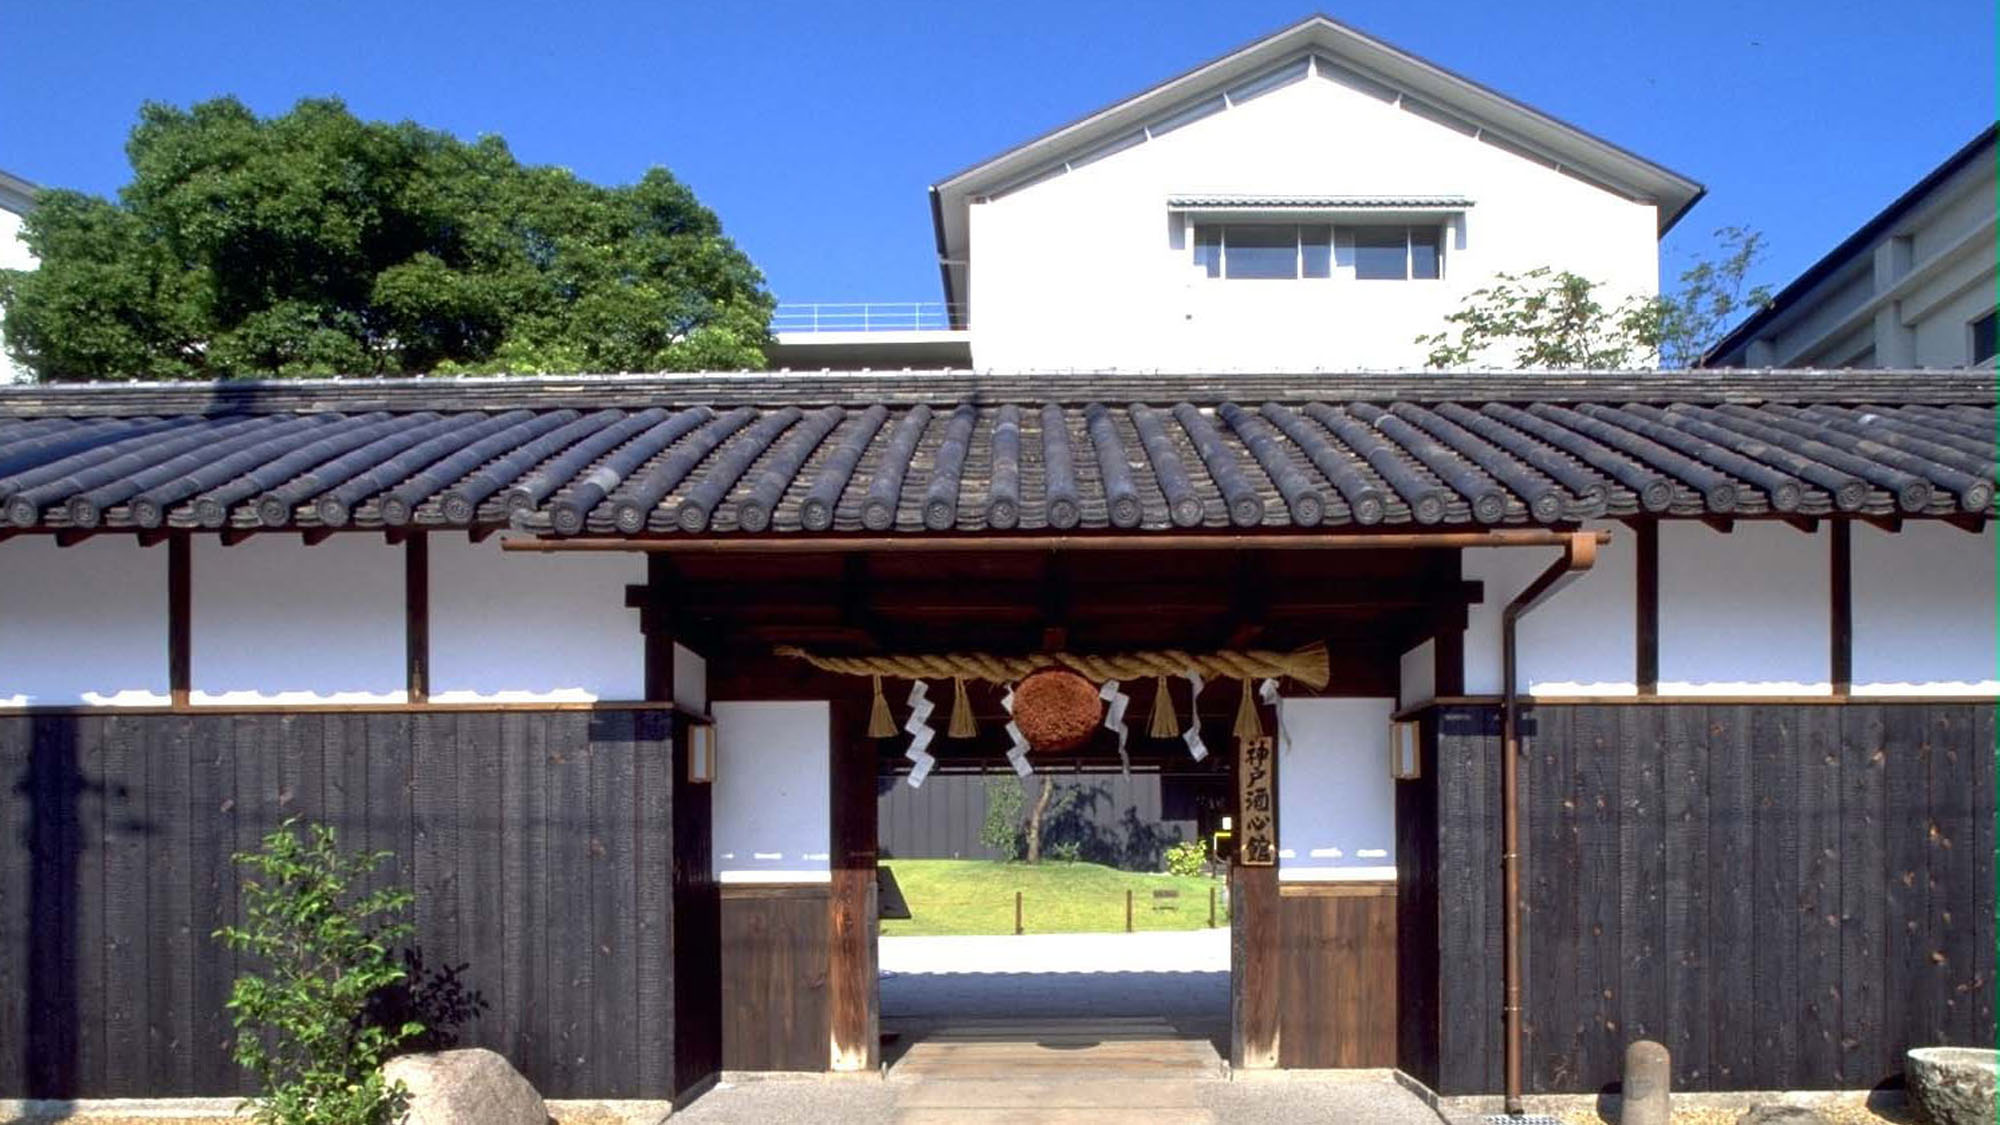 【小磯記念美術館】ホテルから徒歩5分。神戸で生まれ神戸で作画活動を続けた洋画家小磯良平の作品を所蔵。